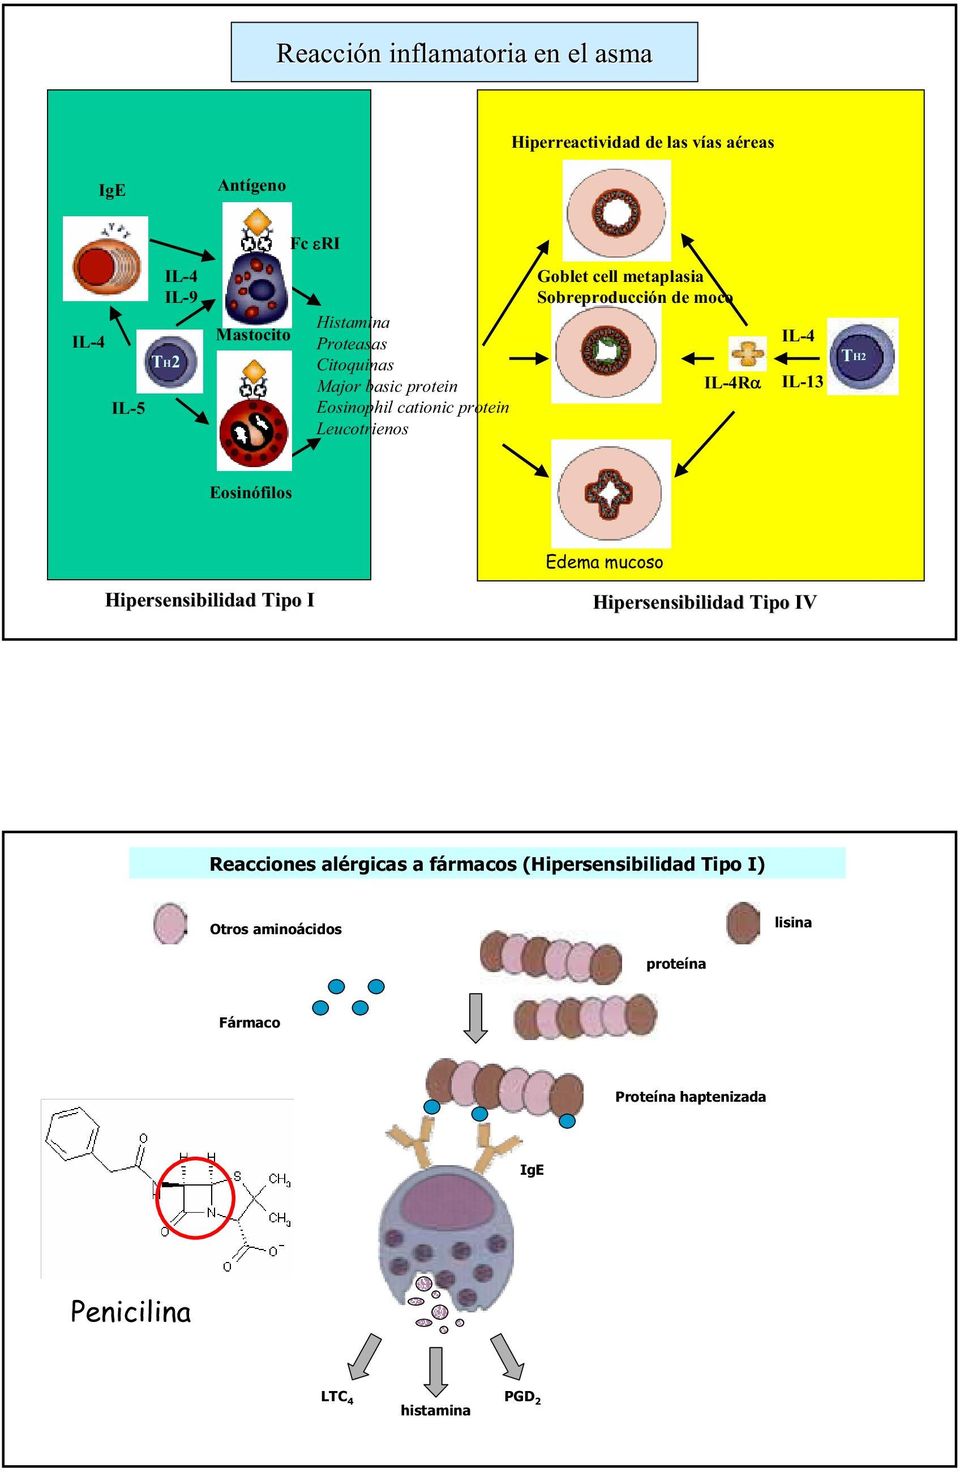 de moco IL-4R IL-4 IL-13 TH2 Eosinófilos Edema mucoso Hipersensibilidad Tipo I Hipersensibilidad Tipo IV Reacciones alérgicas a